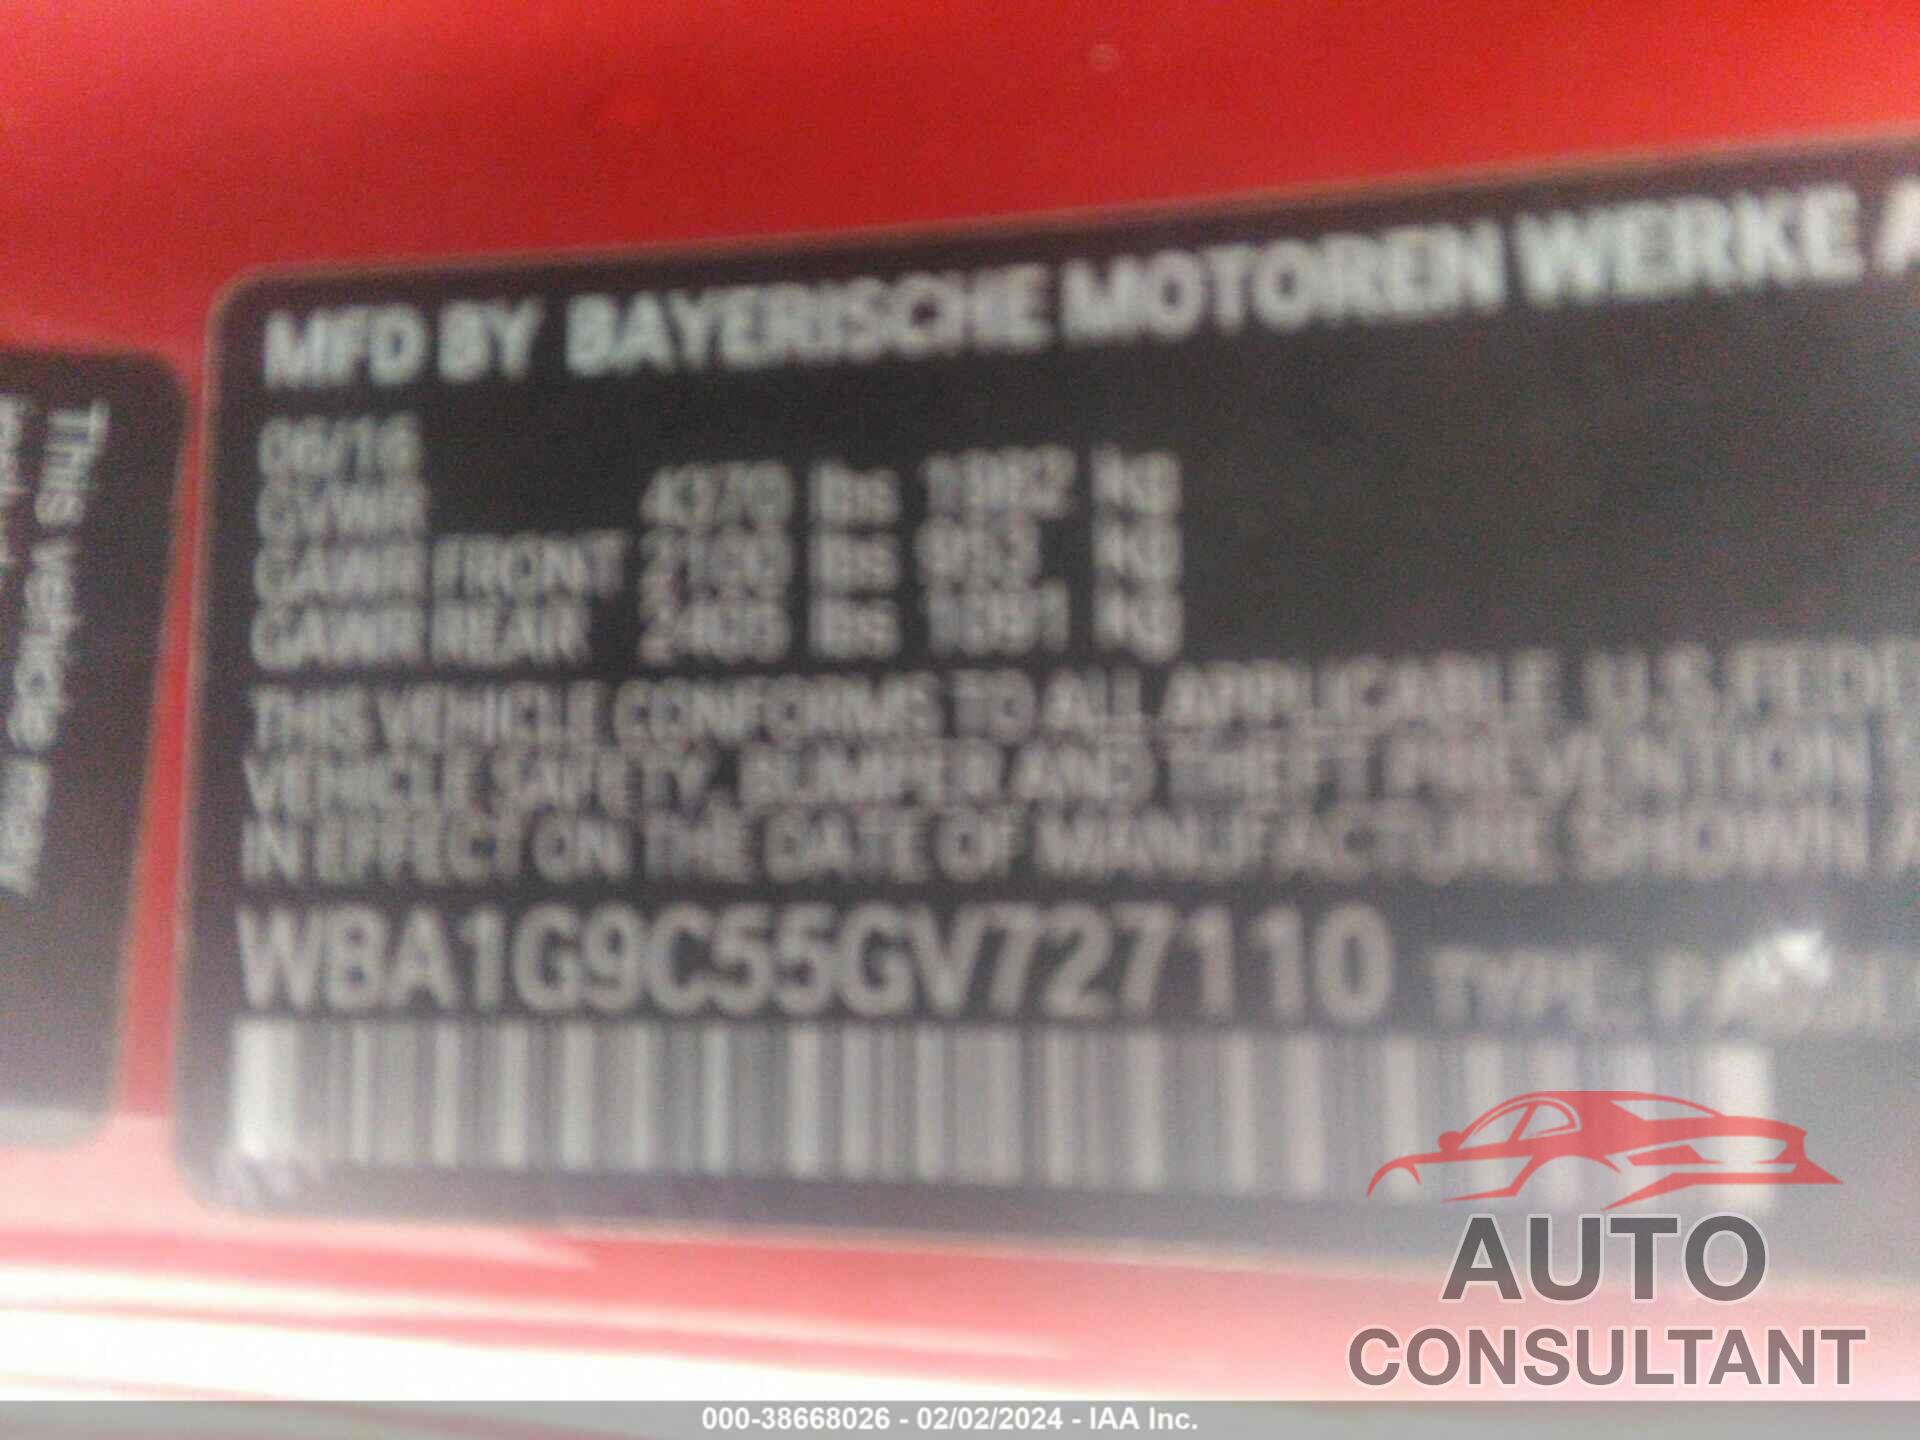 BMW 228I 2016 - WBA1G9C55GV727110